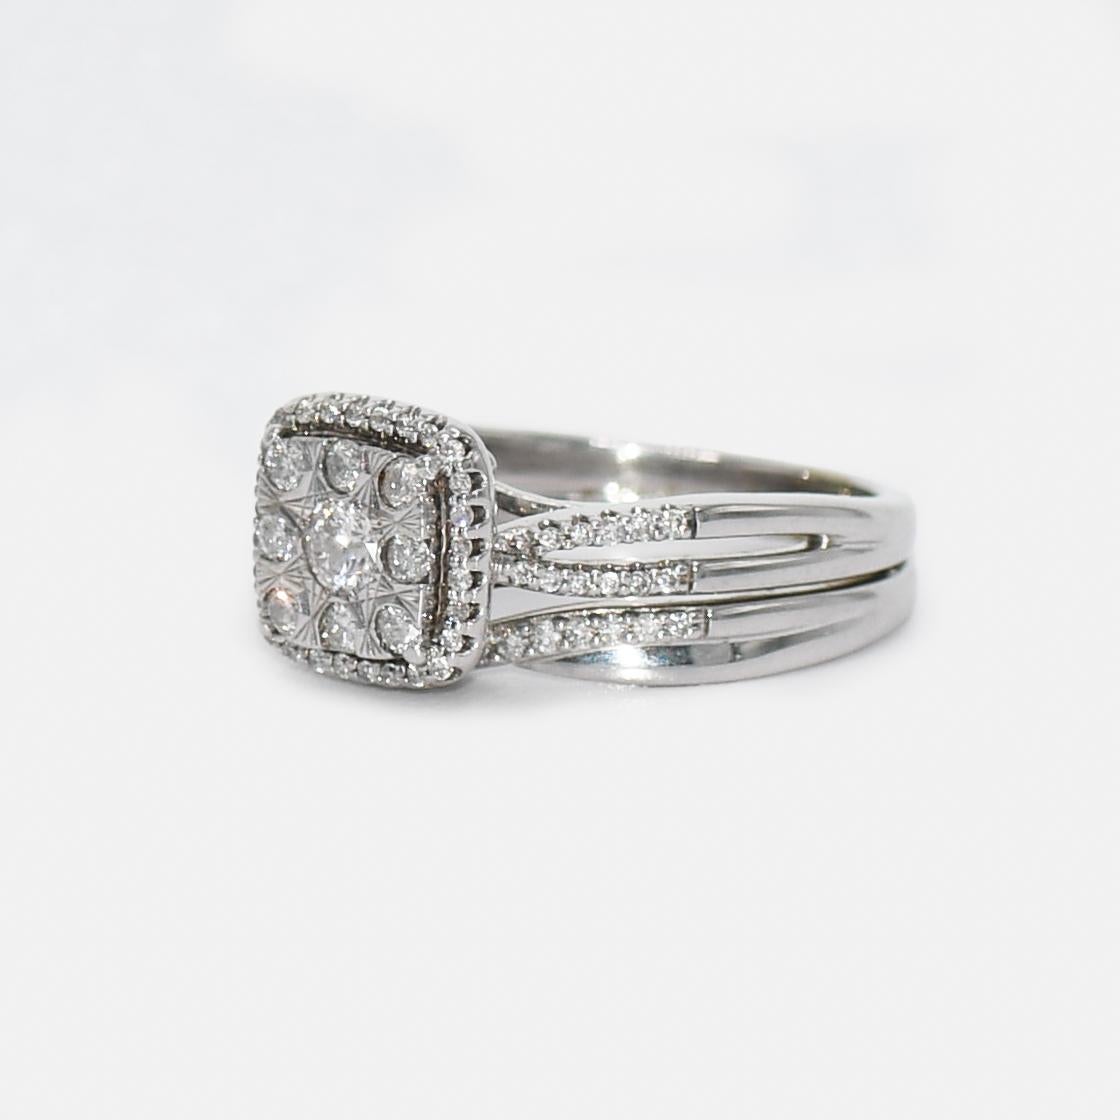 10k White Gold Diamond Ring 0.40tdw, 5.5g For Sale 1